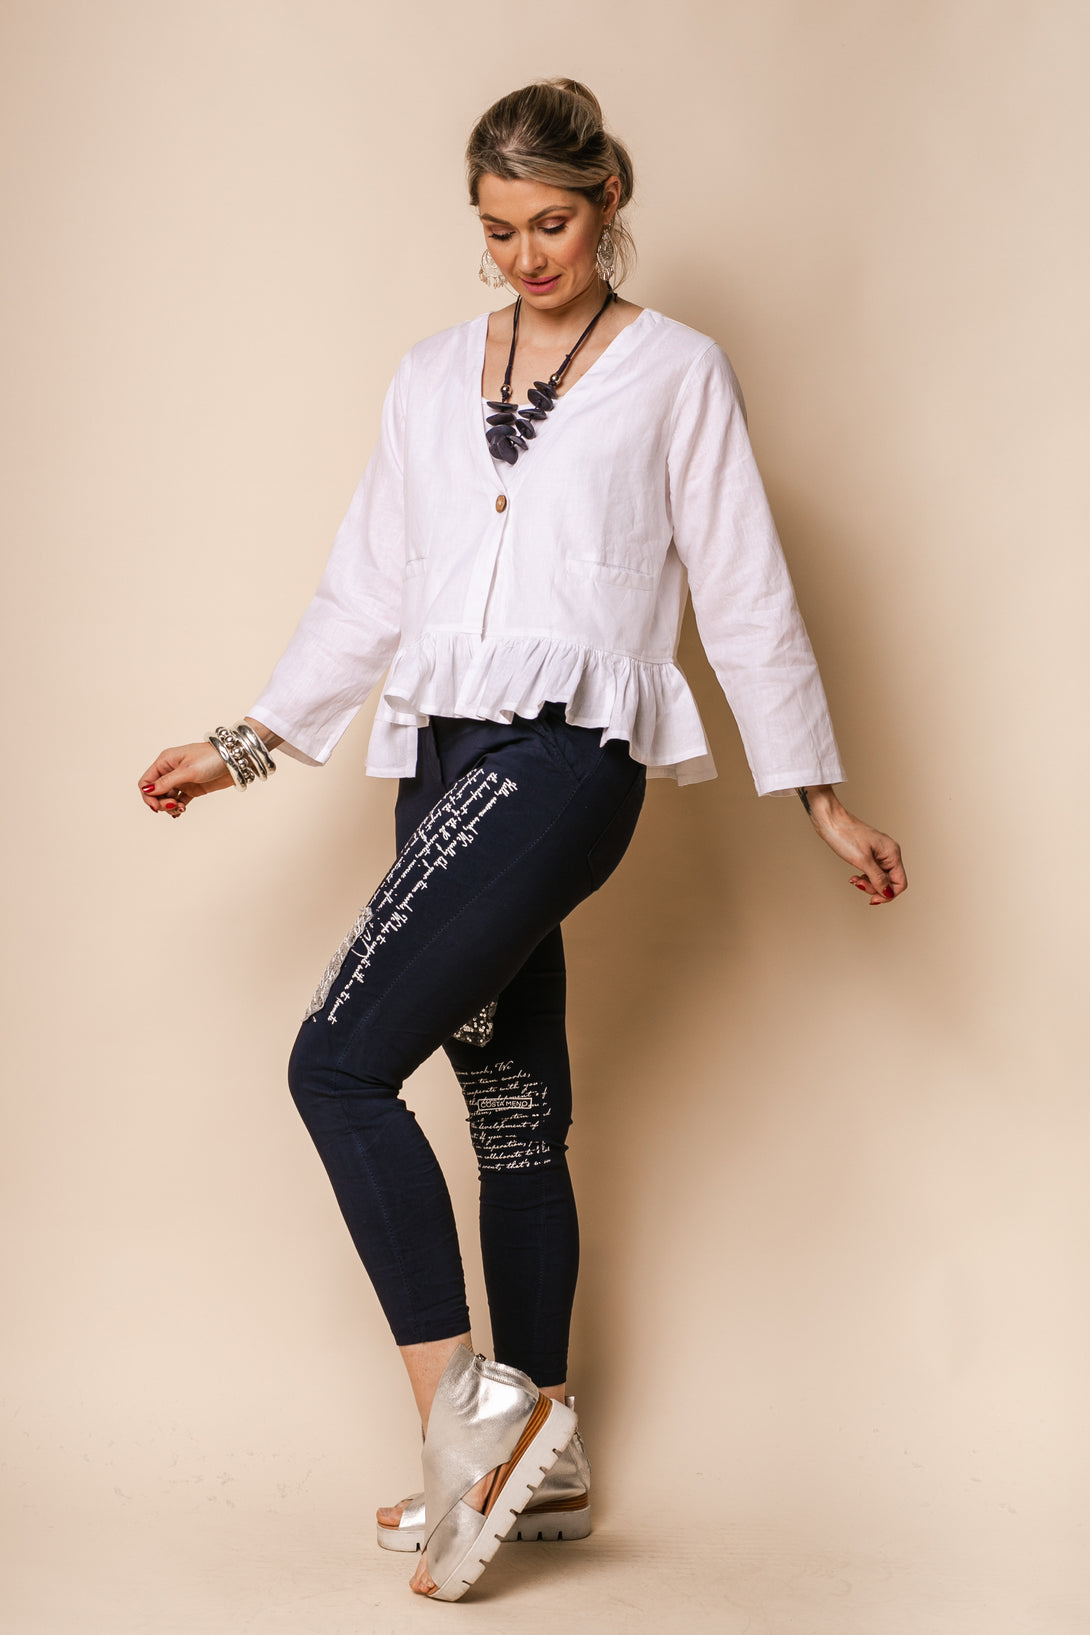 Romy Linen Blend Top in White - Imagine Fashion